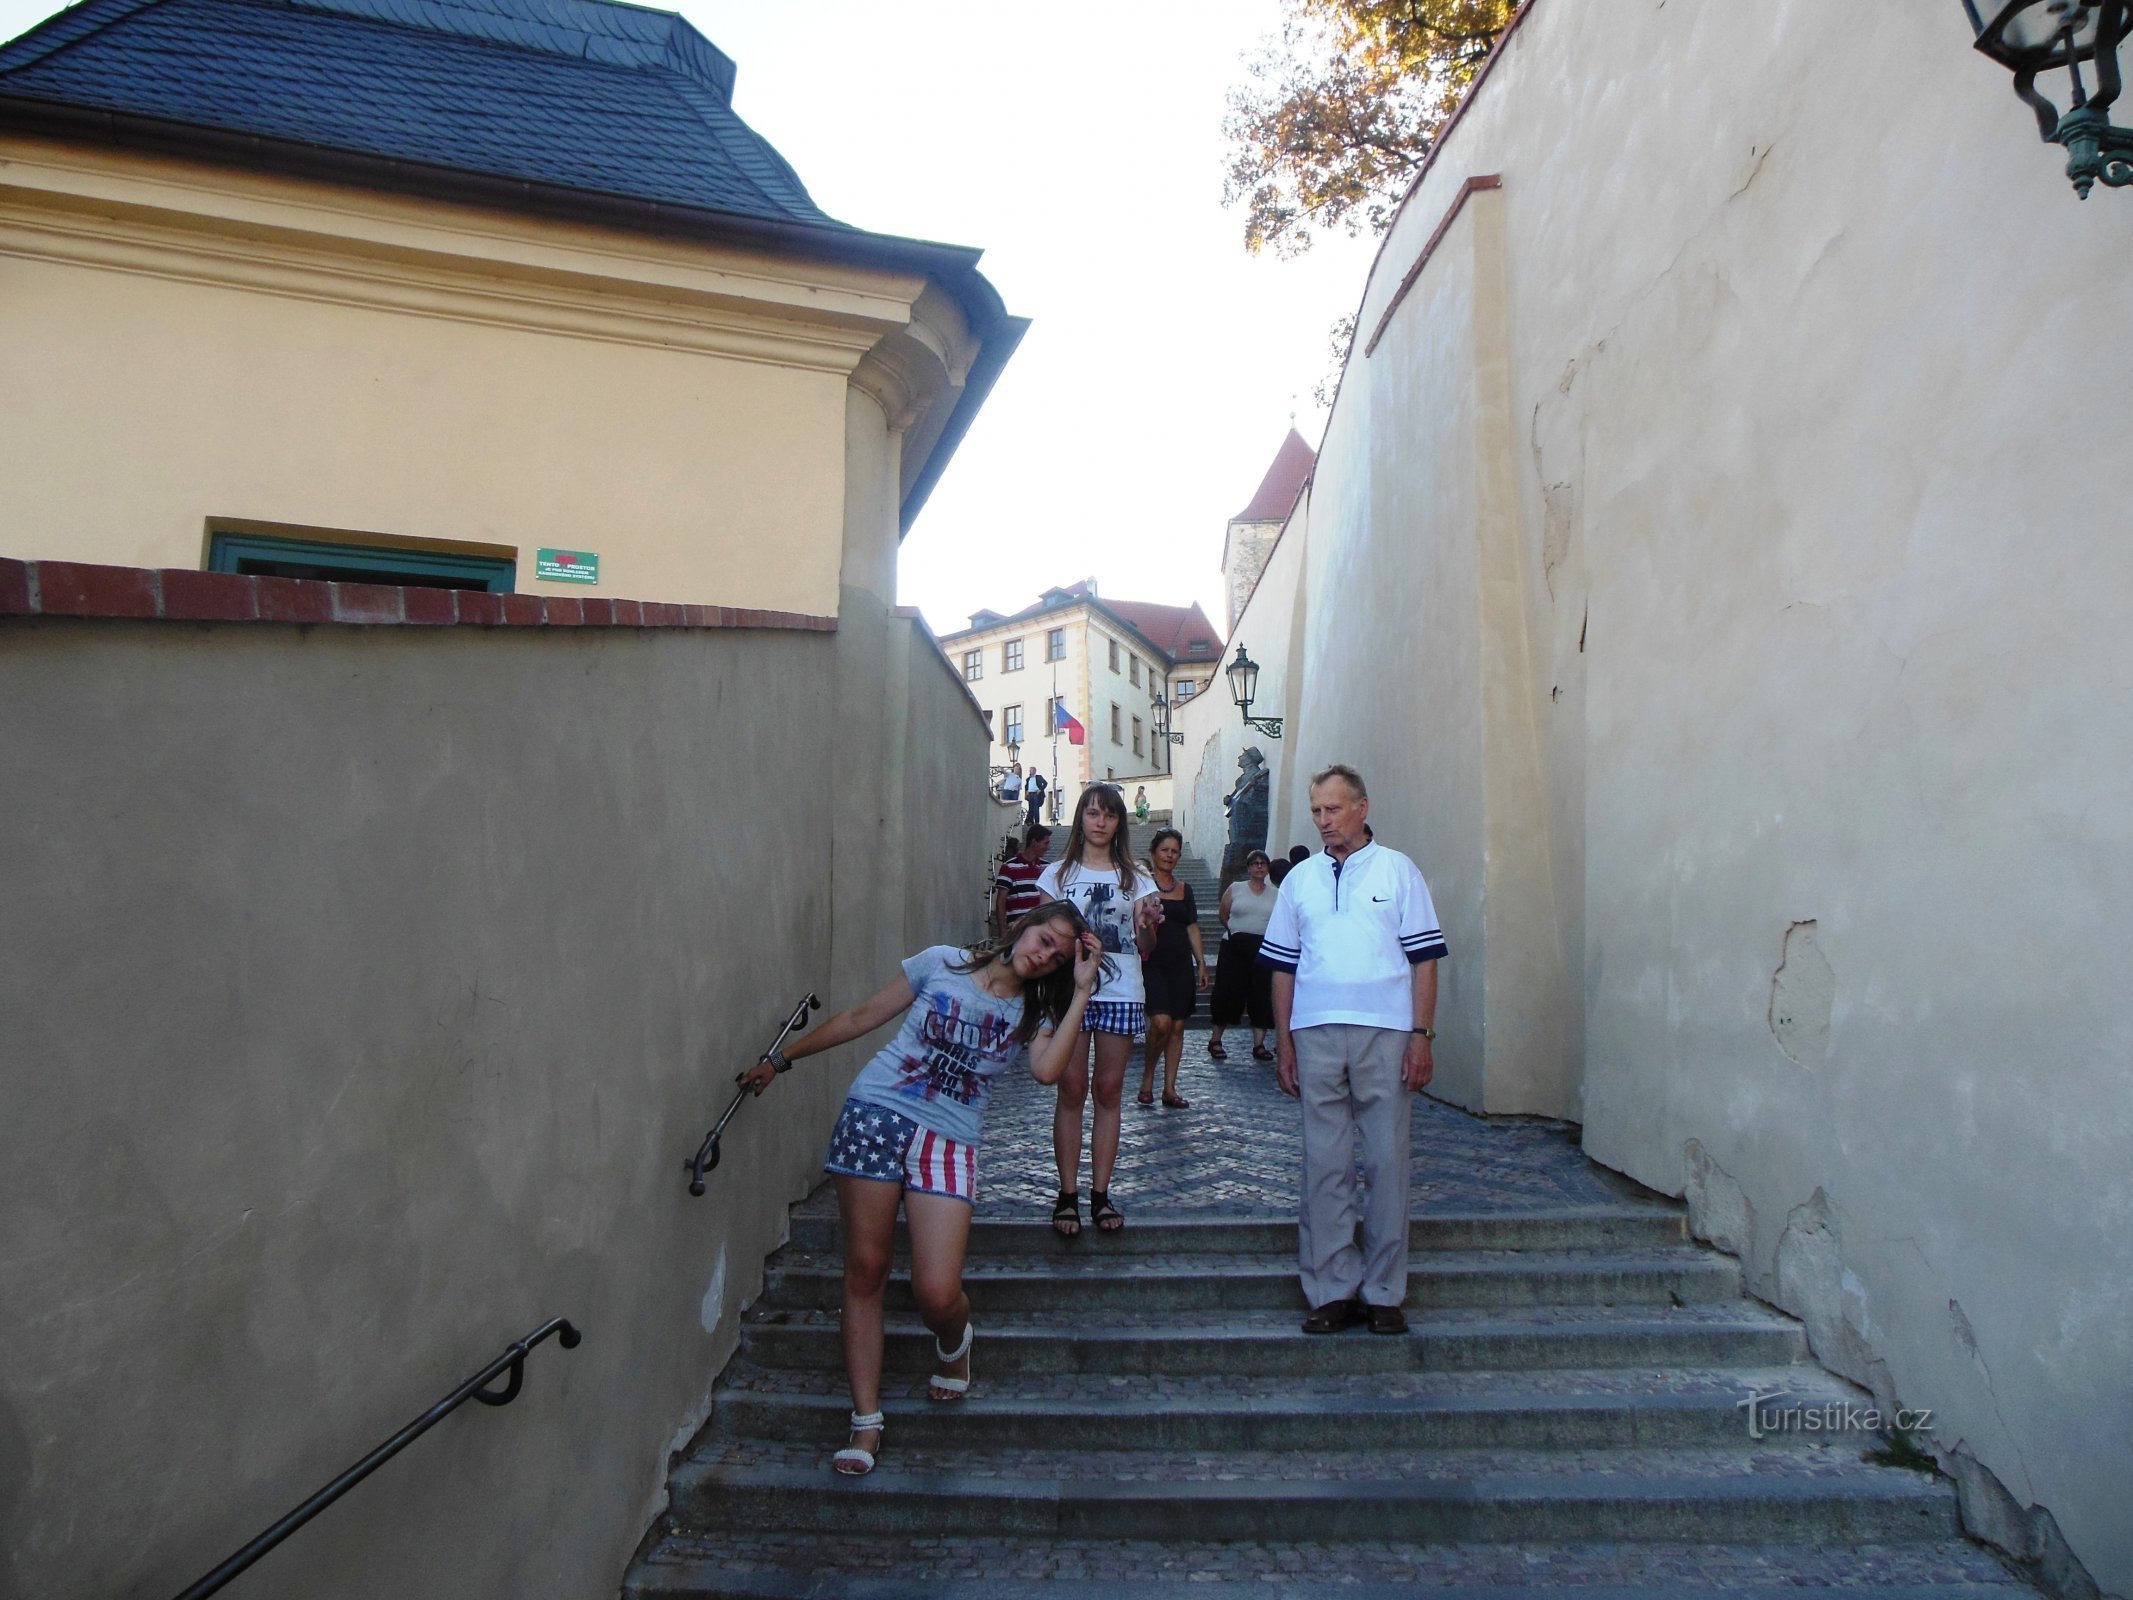 古い城の階段を上って、石の階段を上って…ヴァルデマール・マトゥシュカが歌ったように